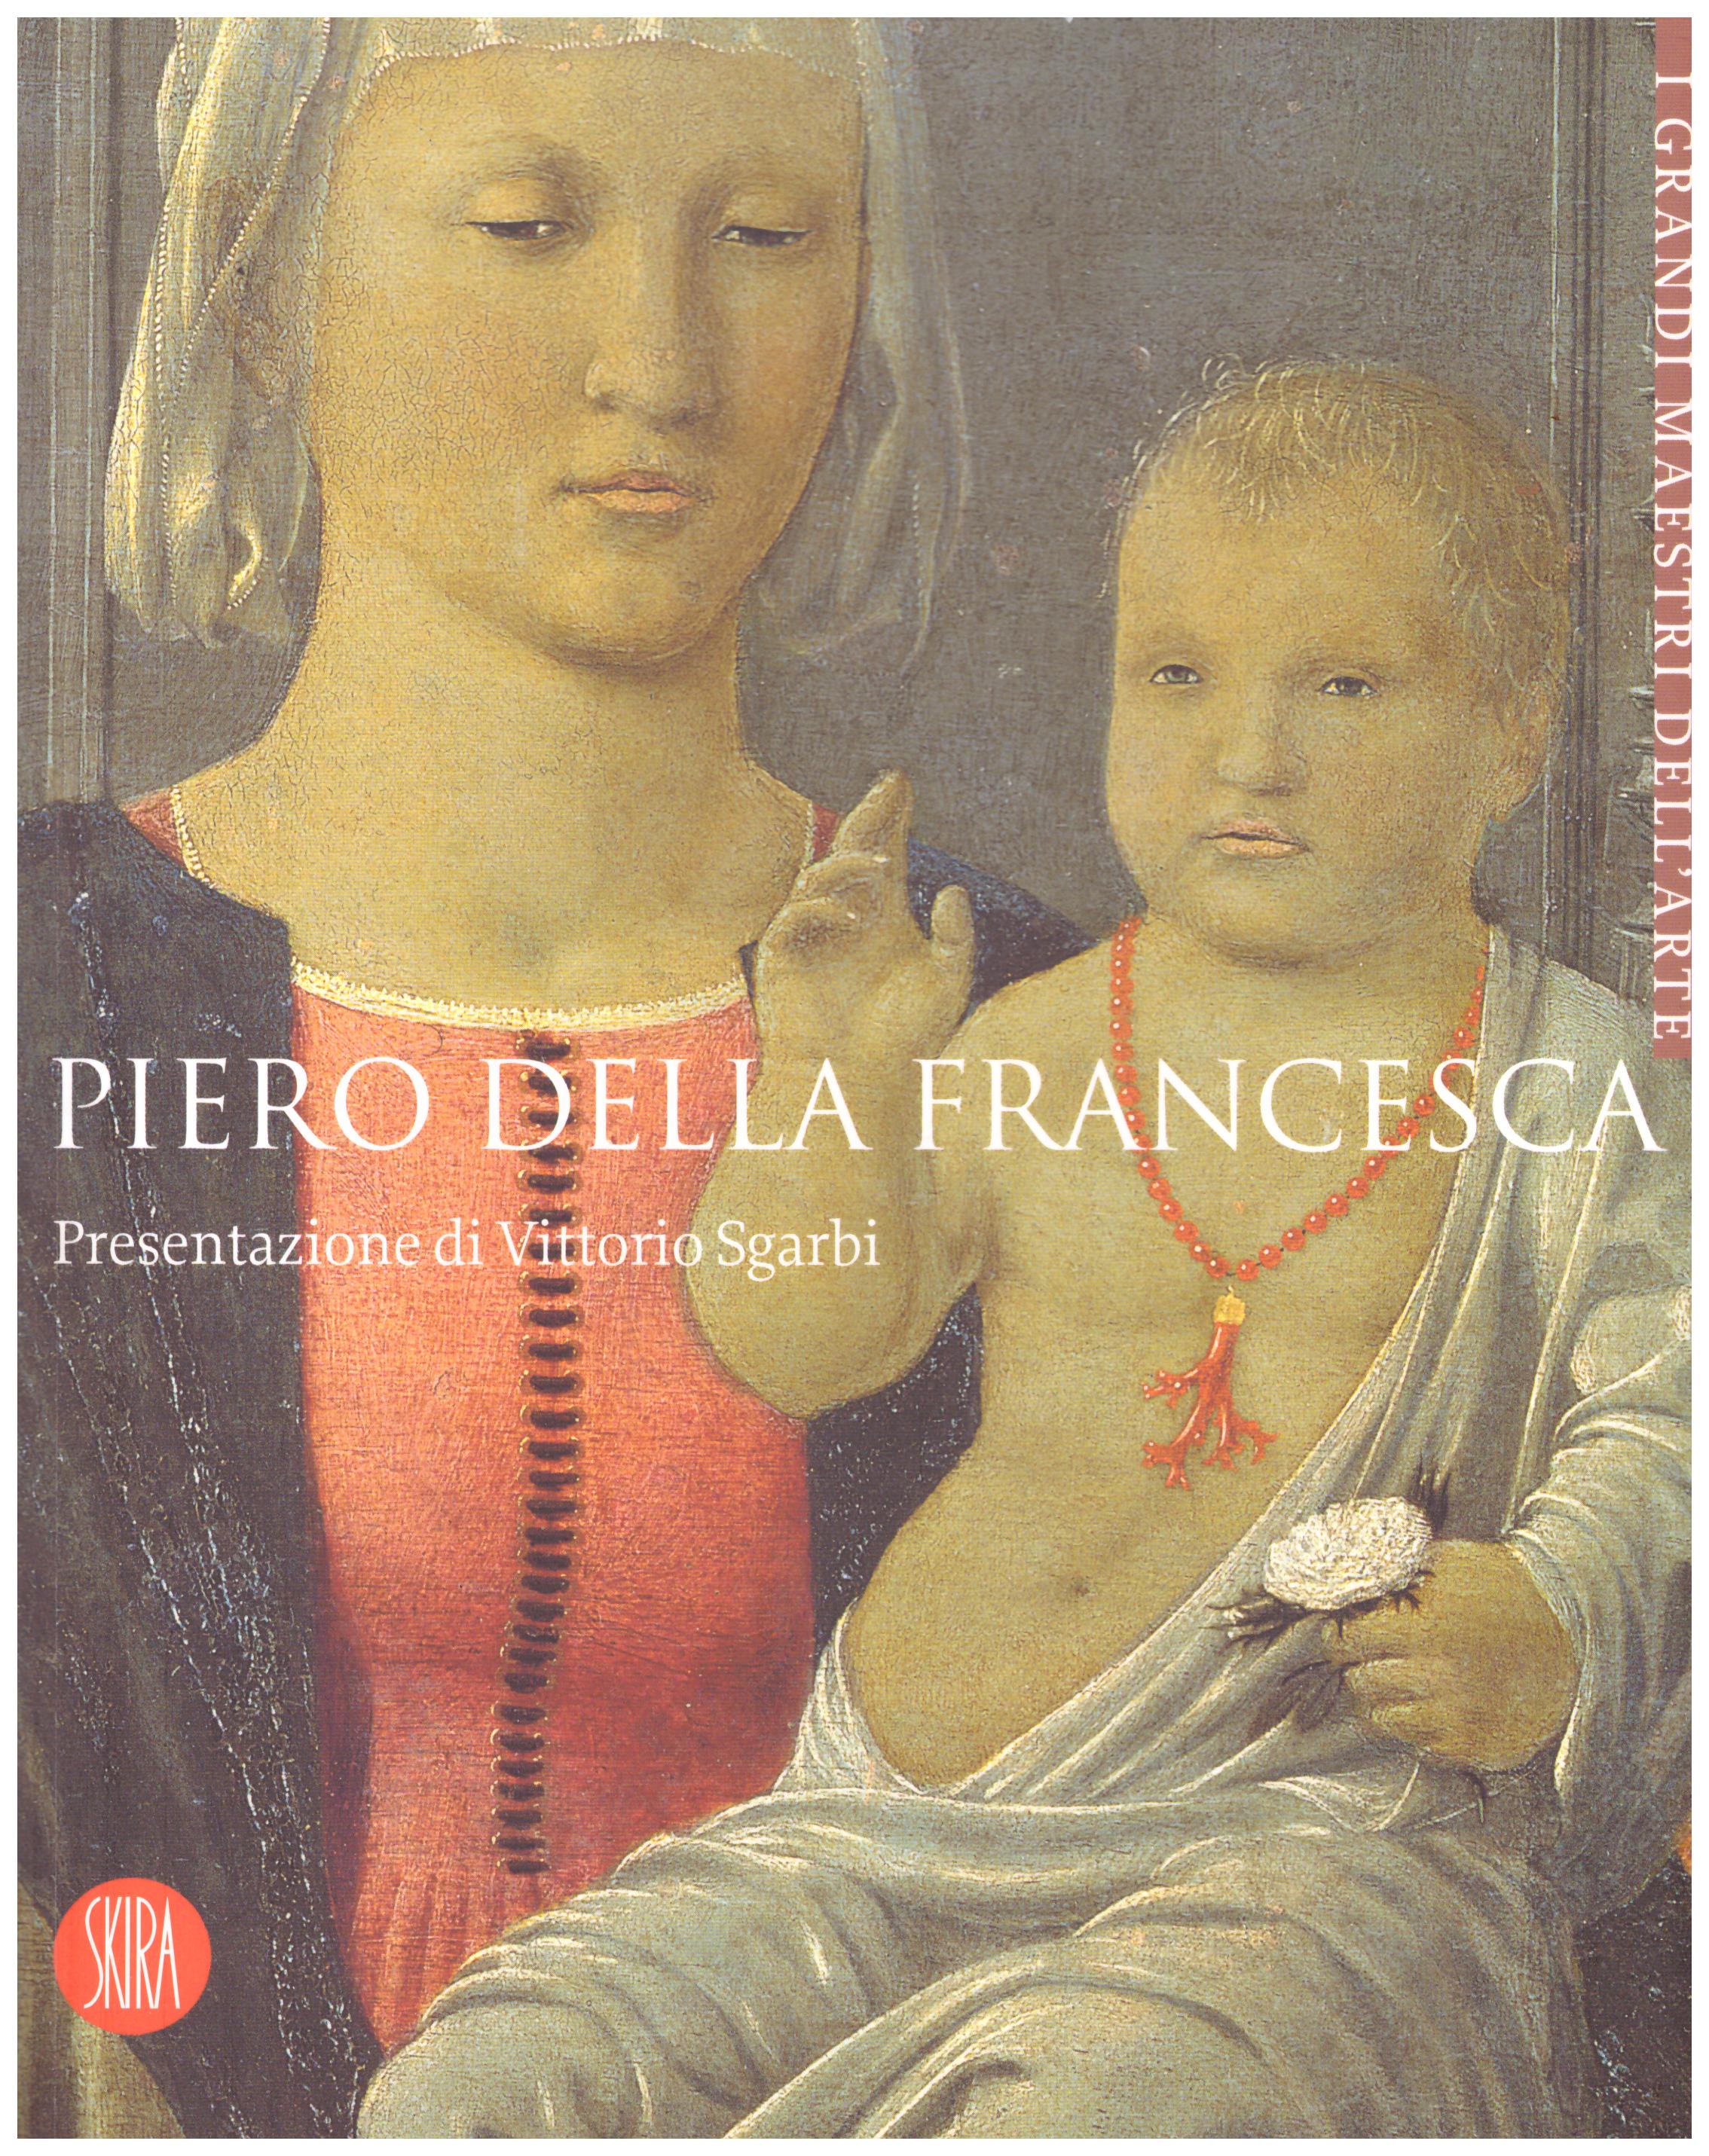 Piero della Francesca. Collana: I grandi maestri dell'arte